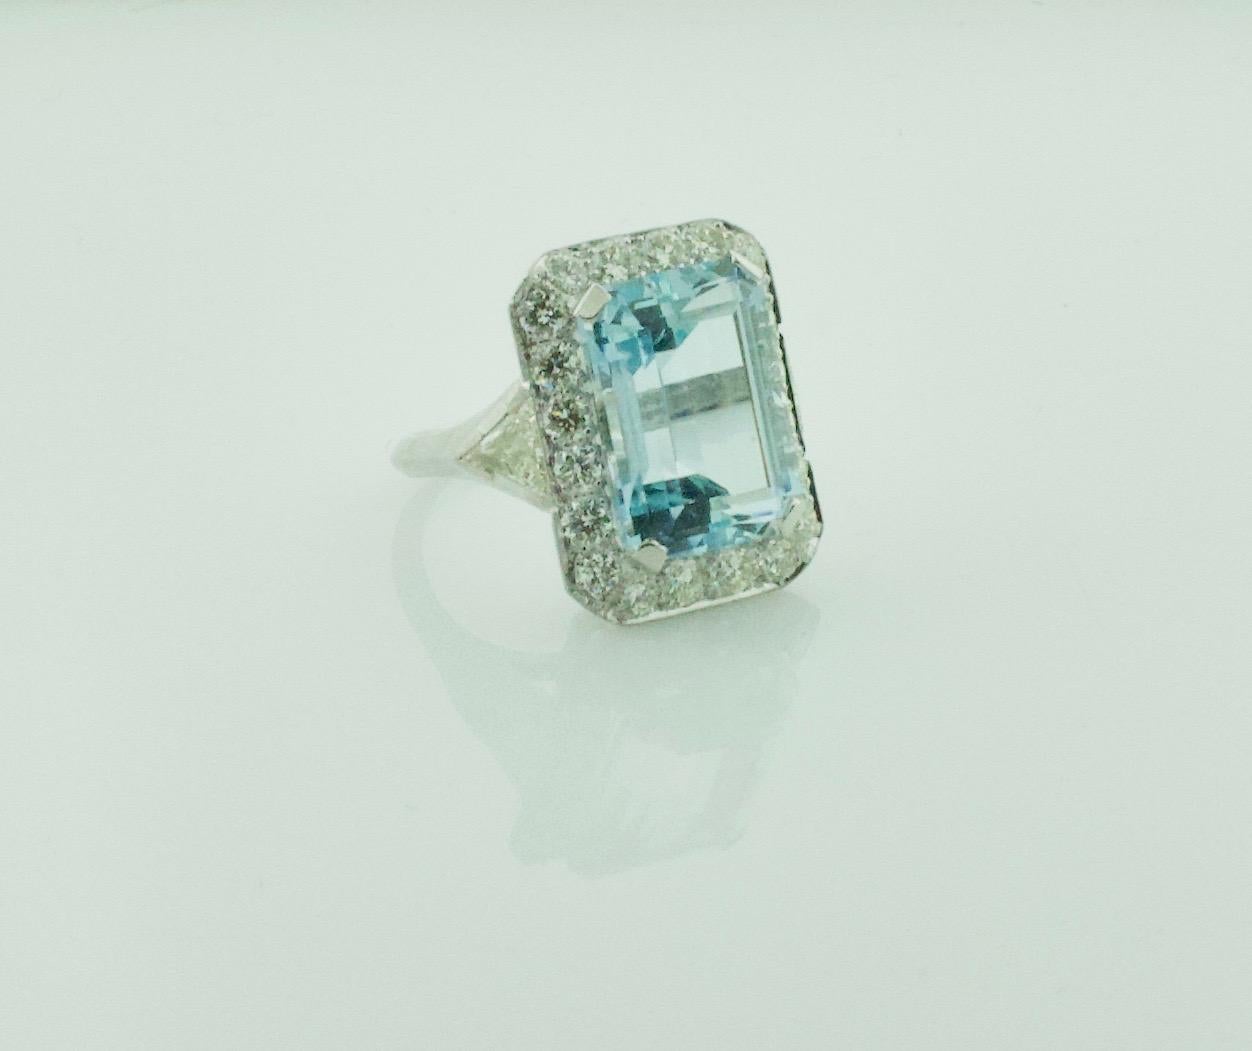 10 carat aquamarine stone